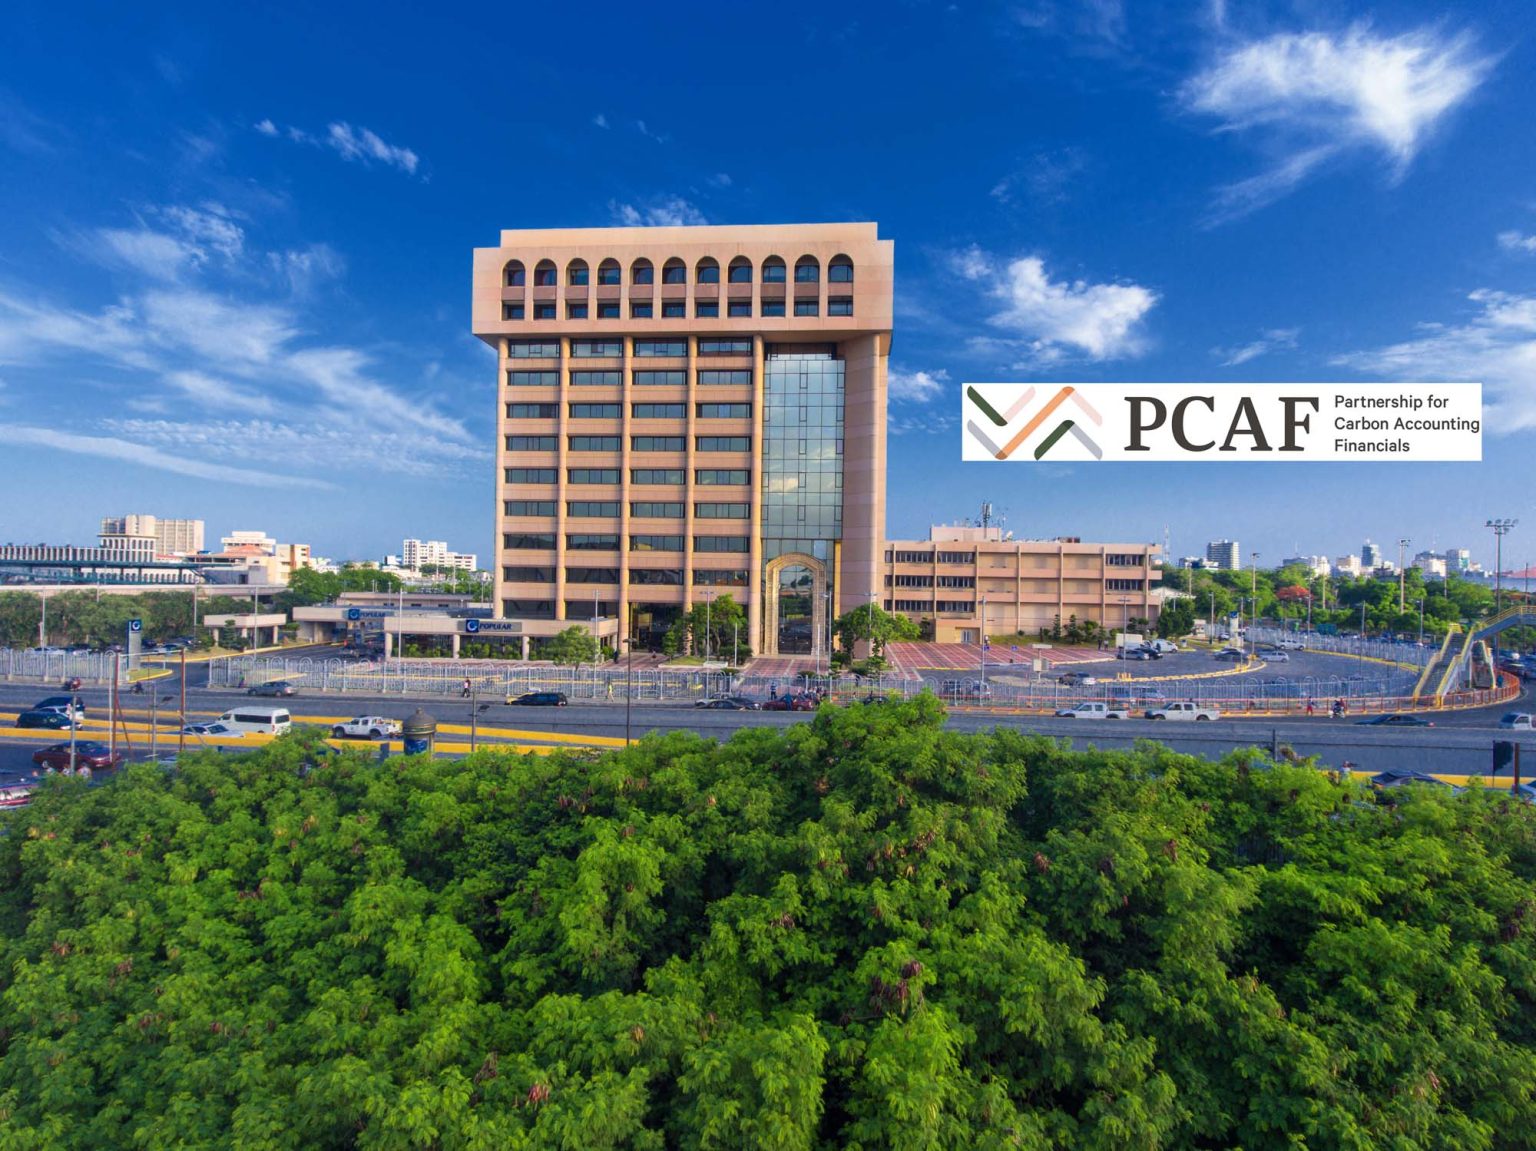 Torre Popular con el logo del PCAF